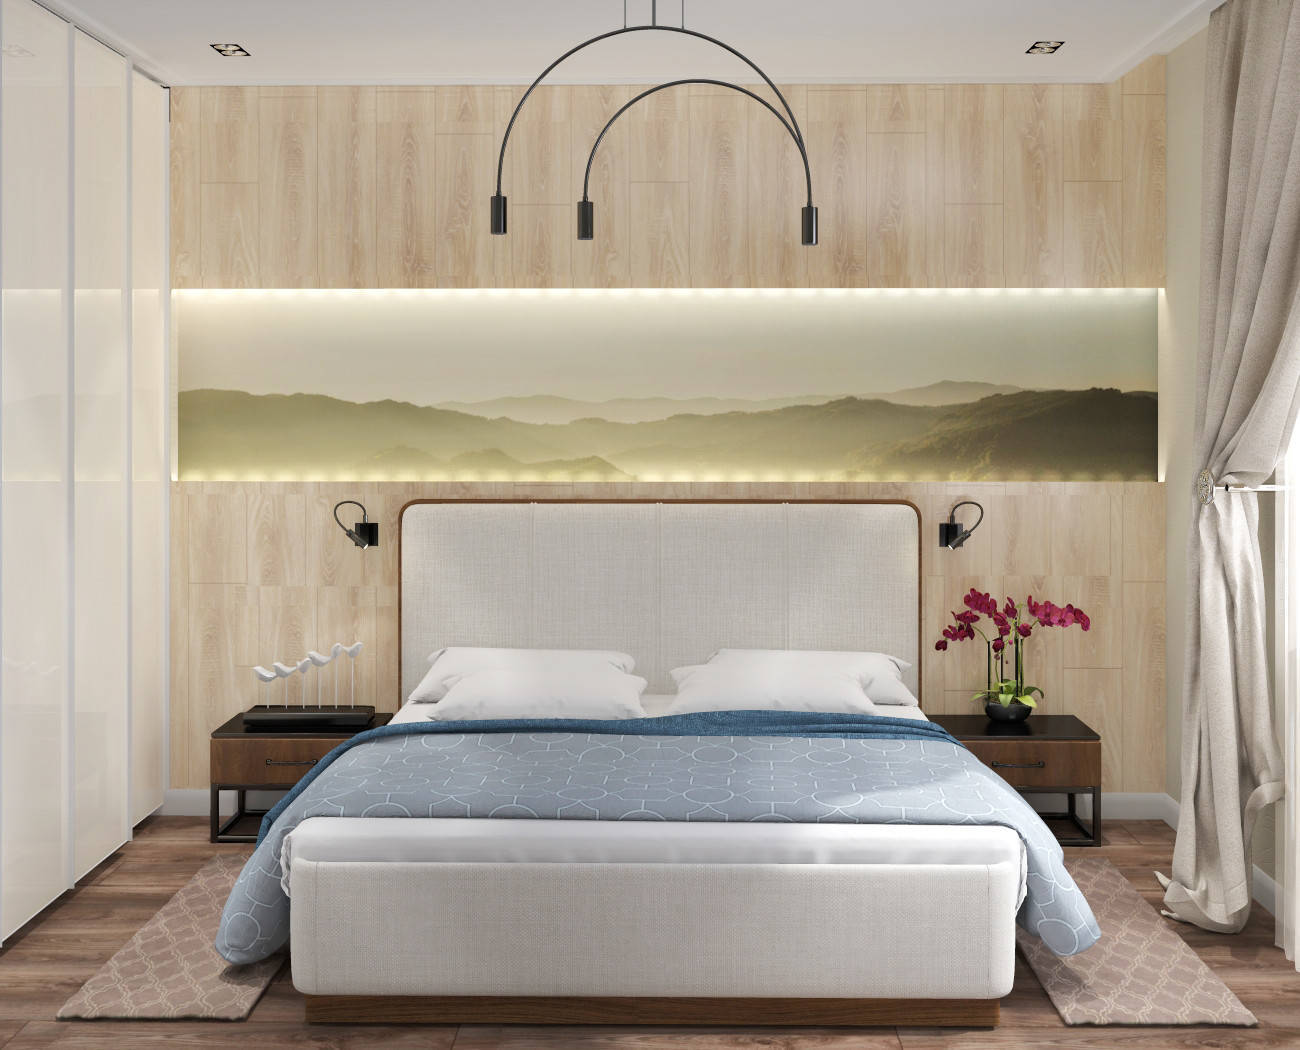 Интерьер спальни cветовыми линиями, бра над кроватью, подсветкой настенной и светильниками над кроватью в современном стиле